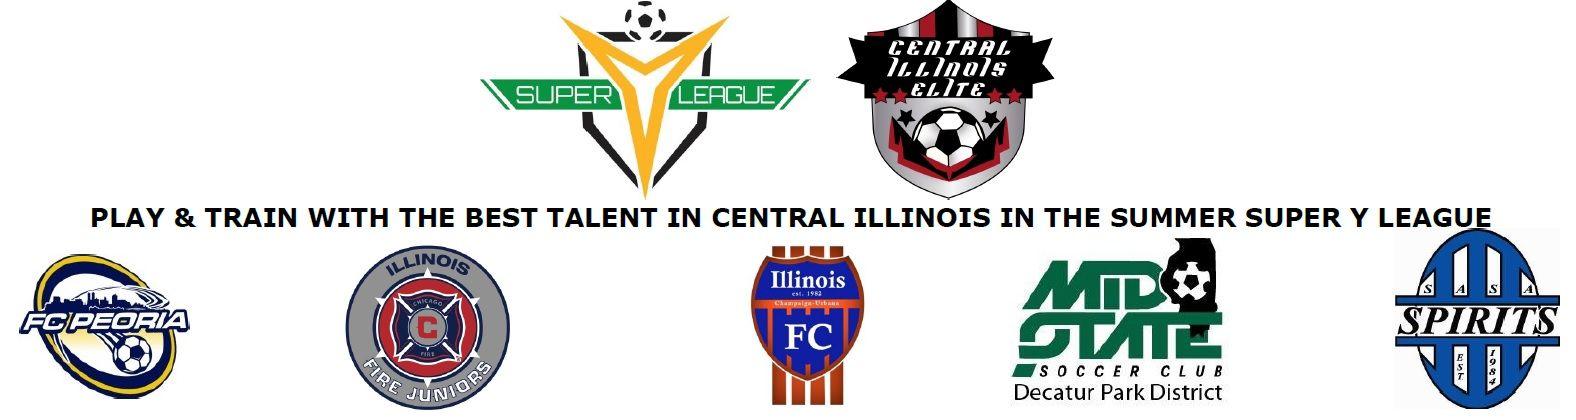 Super Y Logo - Central Illinois Elite Super-Y League